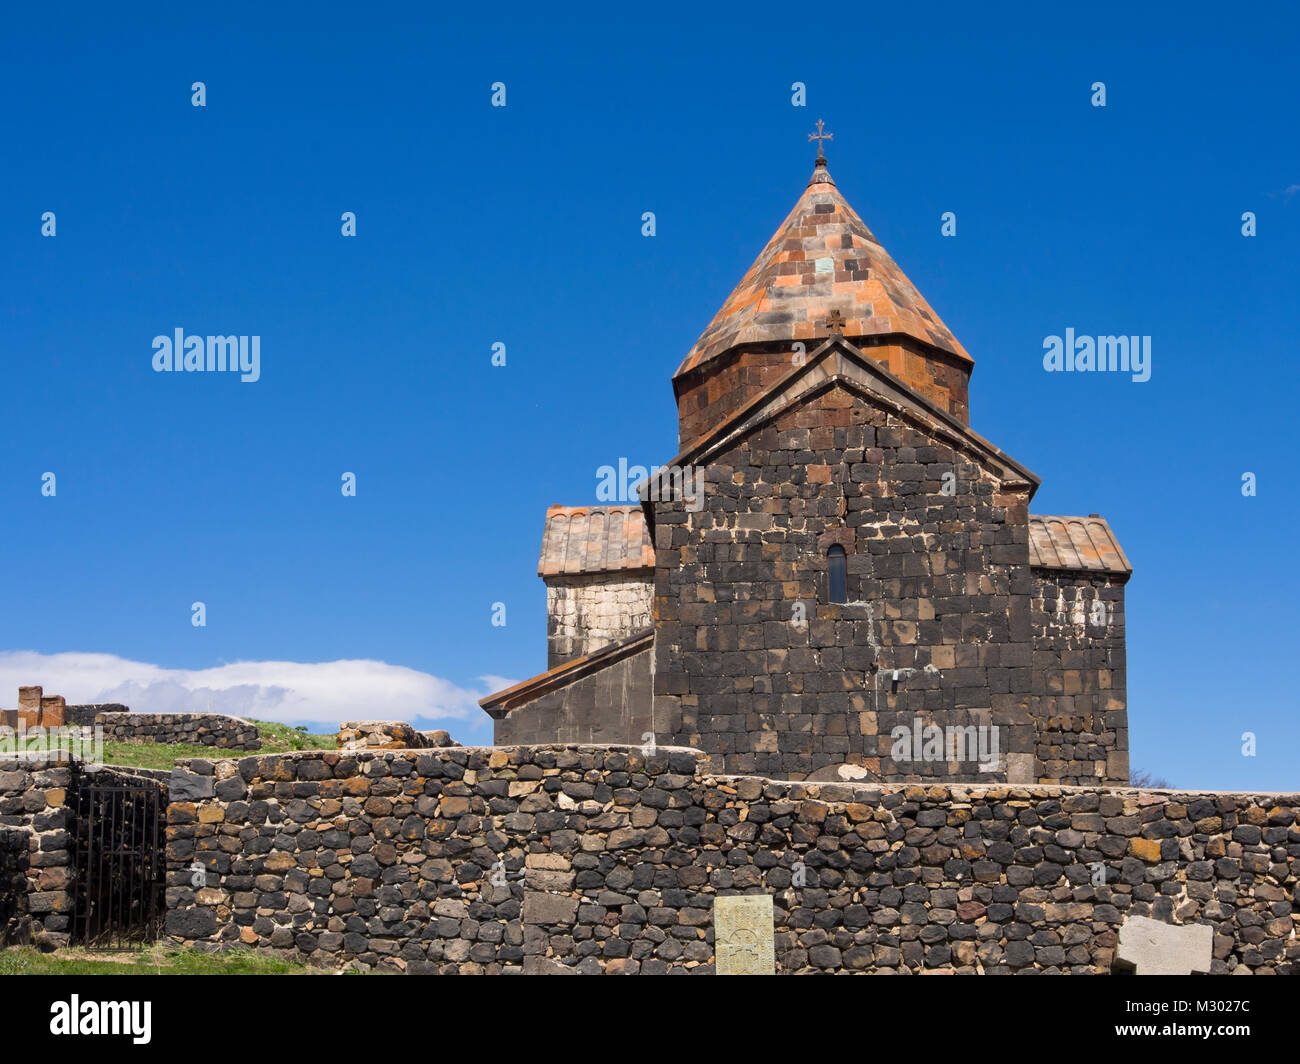 Monasterio de Sevanavank en una península en el lago Sevan en Armenia, un atractivo turístico muy visitado con importancia histórica y religiosa Foto de stock